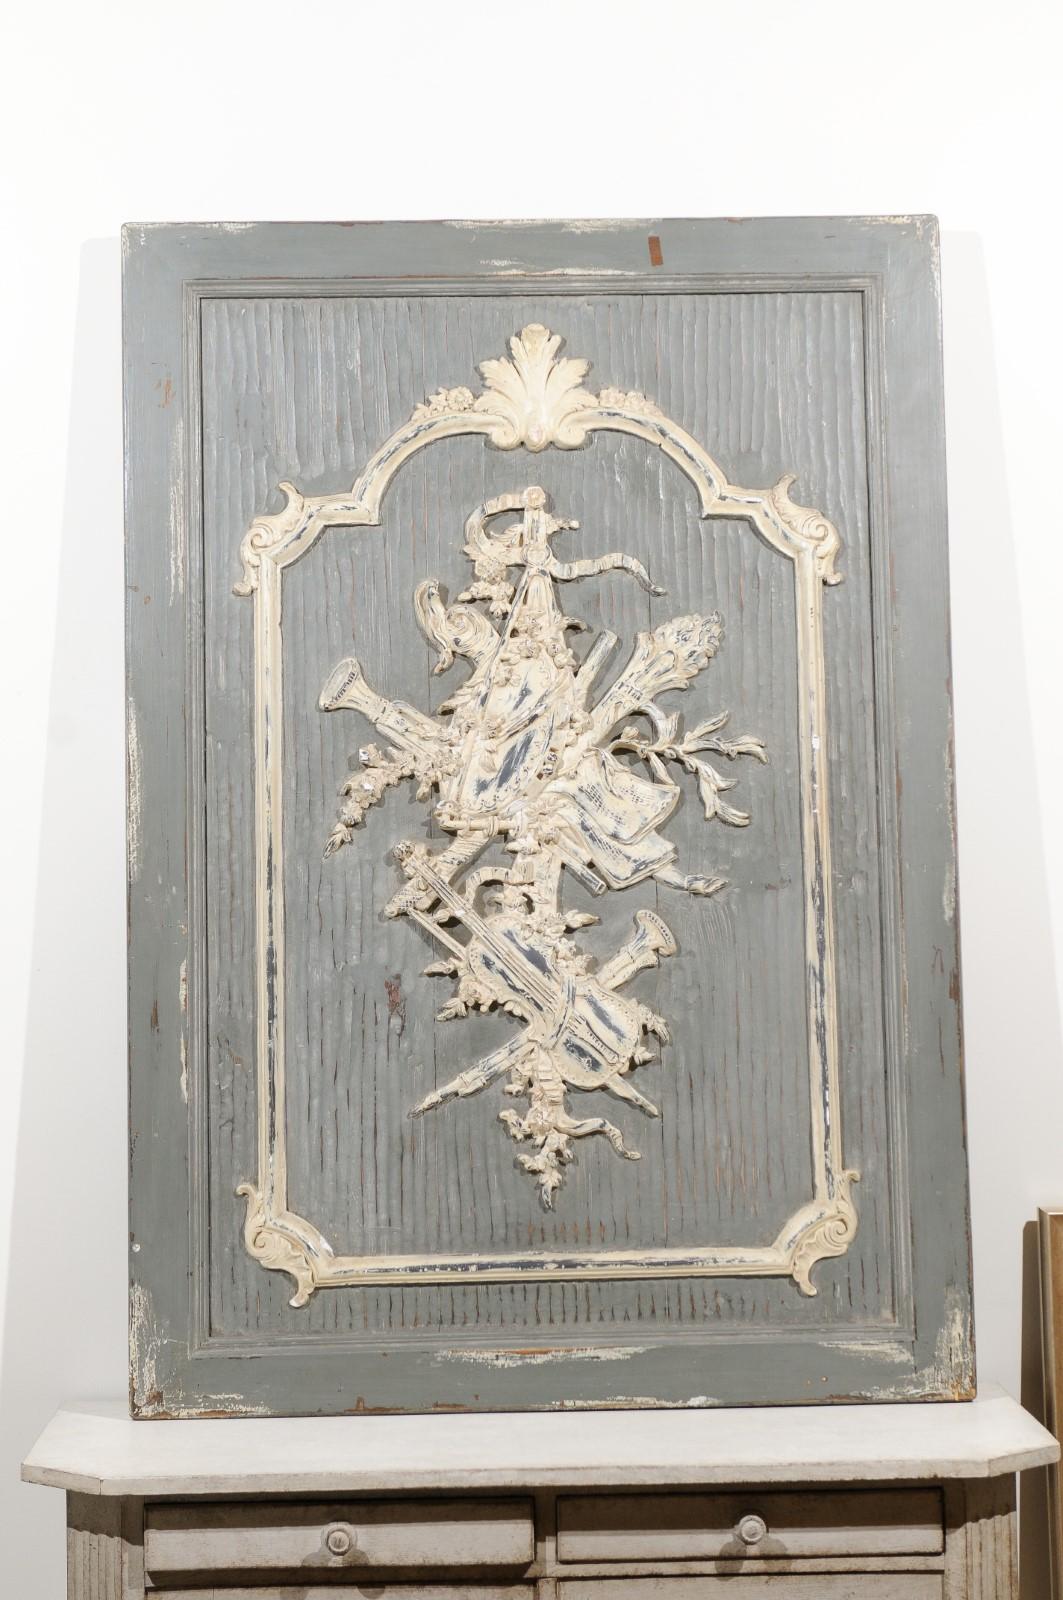 Eine geschnitzte und bemalte französische Holztafel aus dem 19. Jahrhundert mit Musikinstrumenten. Diese architektonische Tafel wurde im 19. Jahrhundert in Frankreich geschaffen und zeigt einen grau gestrichenen, strukturierten Grund mit einer